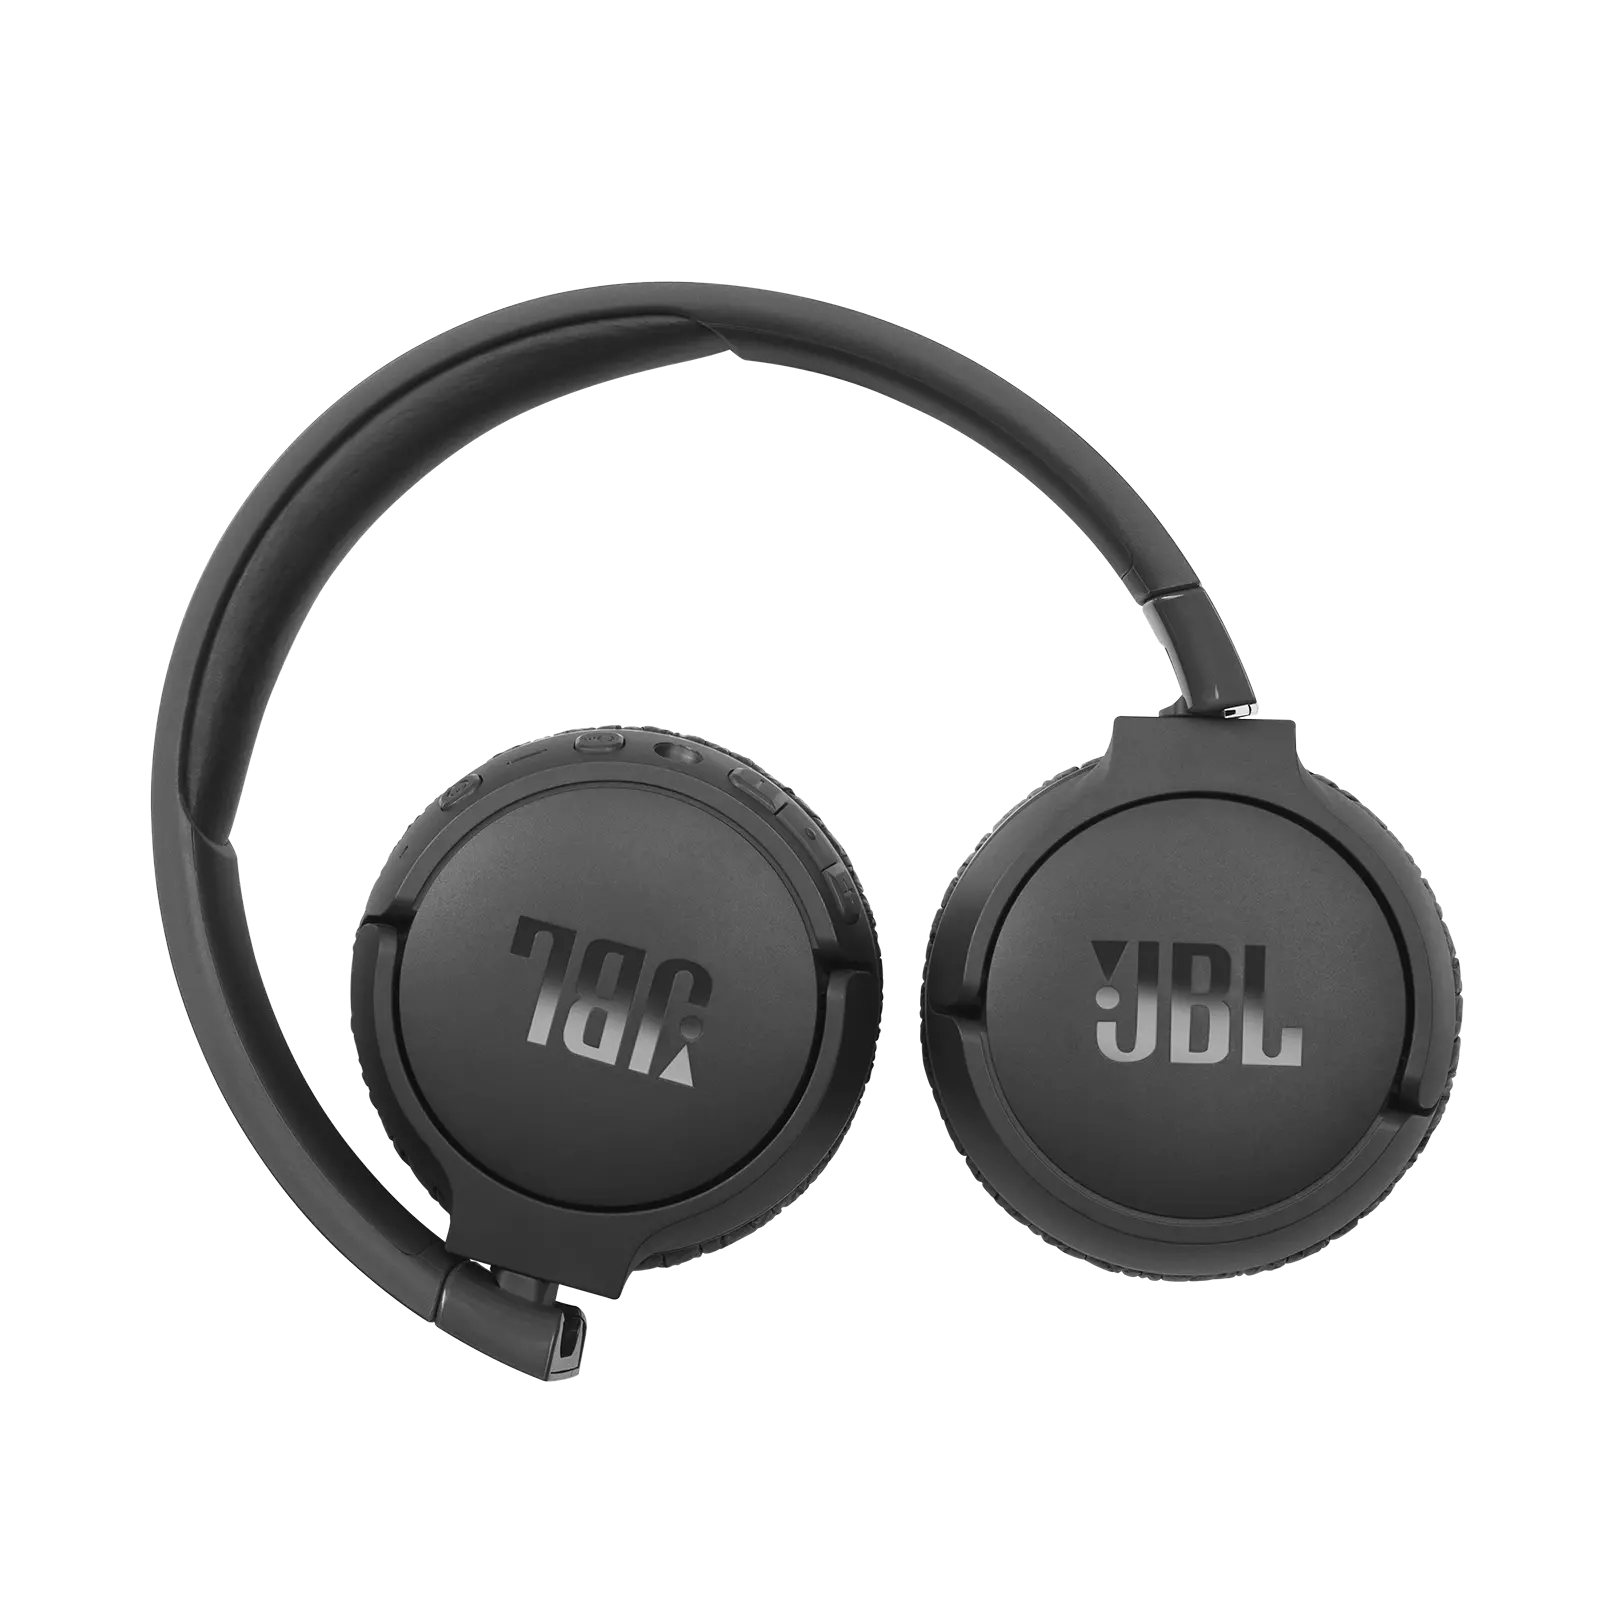 JBL Tune 660BTNC Kulak Üstü ANC Bluetooth Kulaklık, JBL Pure Bass ses kalitesi, Aktif Gürültü Engelleme özelliği, kablosuz kullanımı ve katlanır yapısı ile tüm ihtiyaçlarınıza karşılık verirken, sadece 2 saat içinde tamamen şarj edilebilen bataryası ile 44 saatten fazla kullanım süresi sunarak gün boyu size eşlik edecektir. 